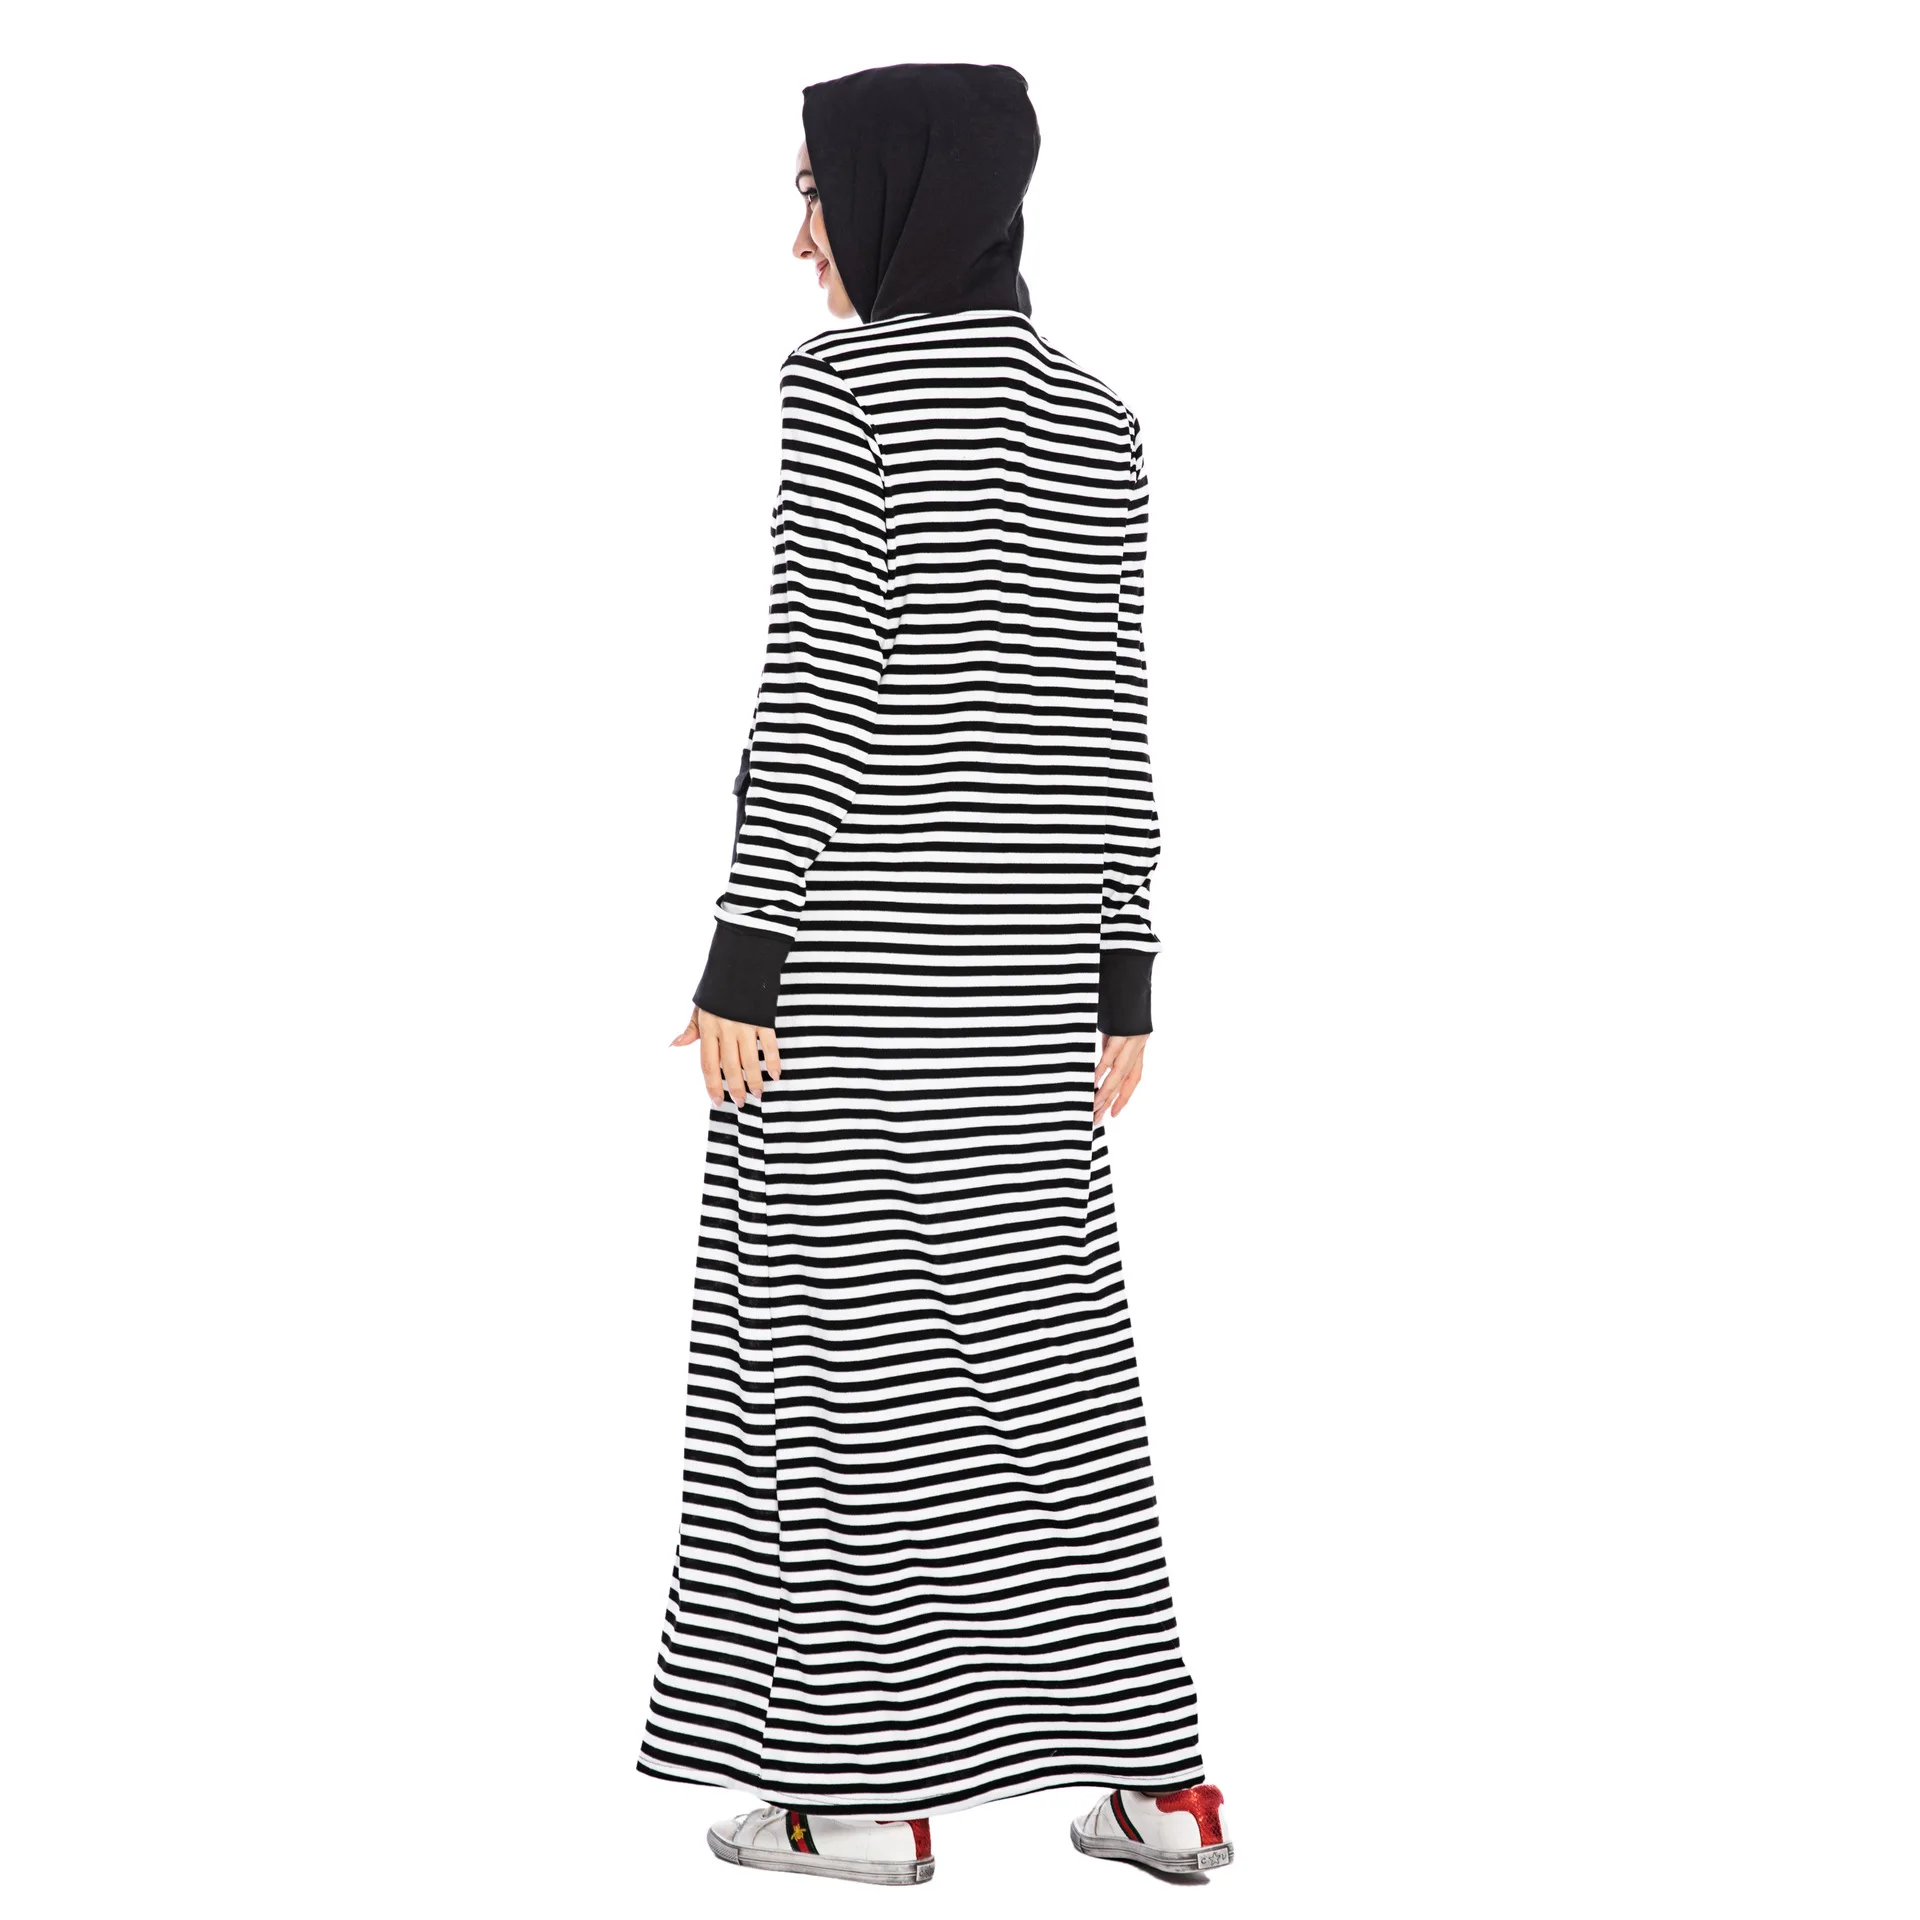 Женское платье в полоску Donsignet длинное с длинными рукавами и карманами капюшоном